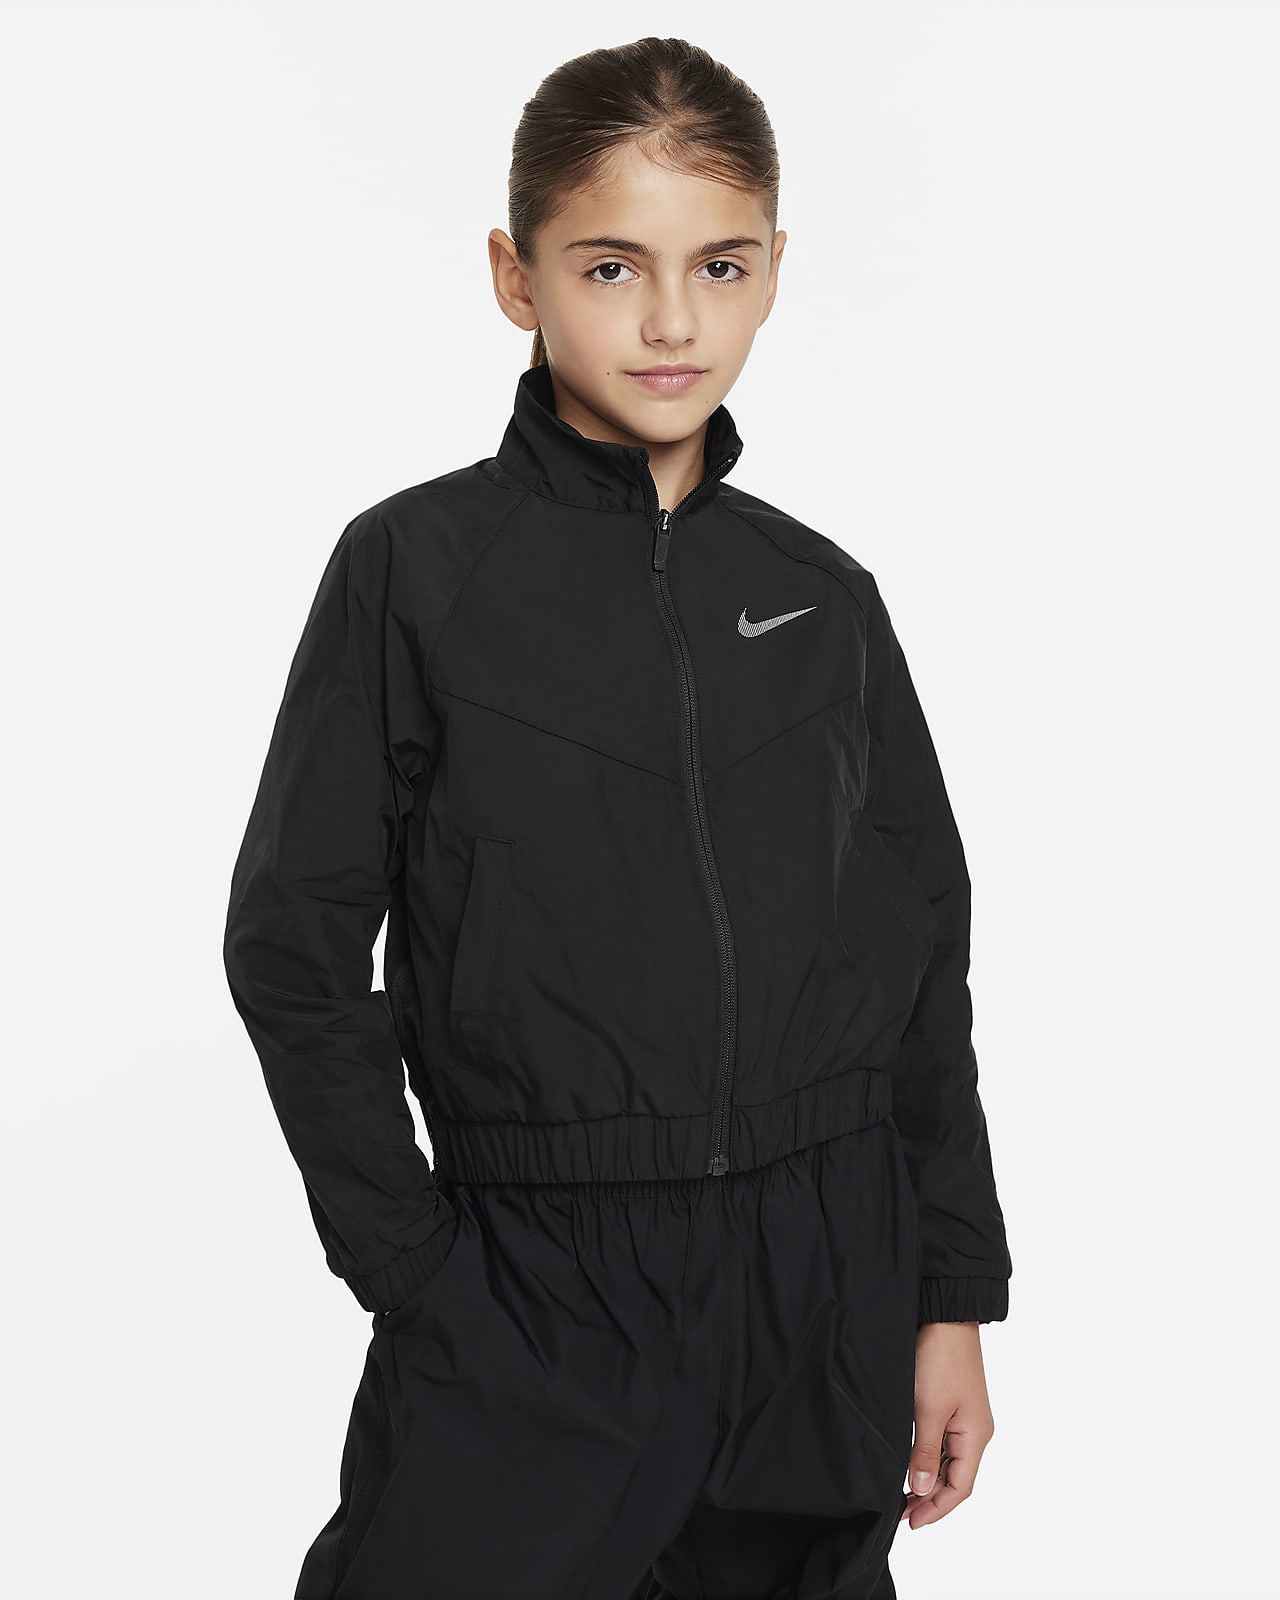 Jacka Nike Sportswear Windrunner med ledig passform för tjejer